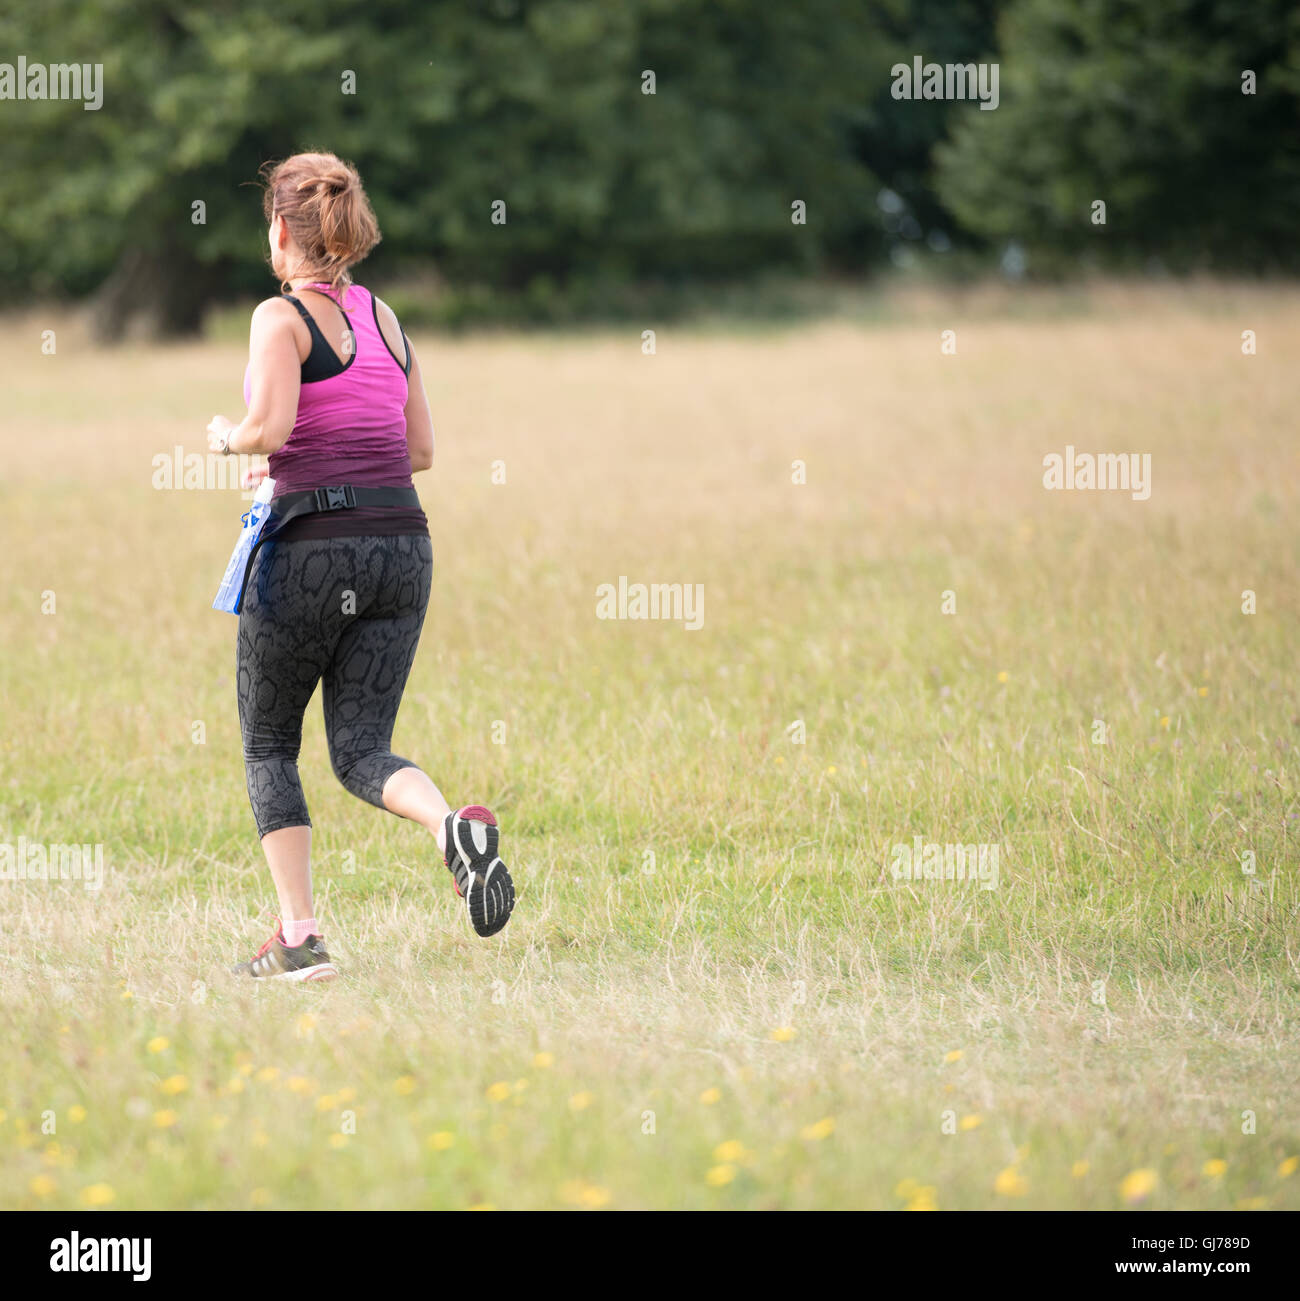 Woman runner Stock Photo